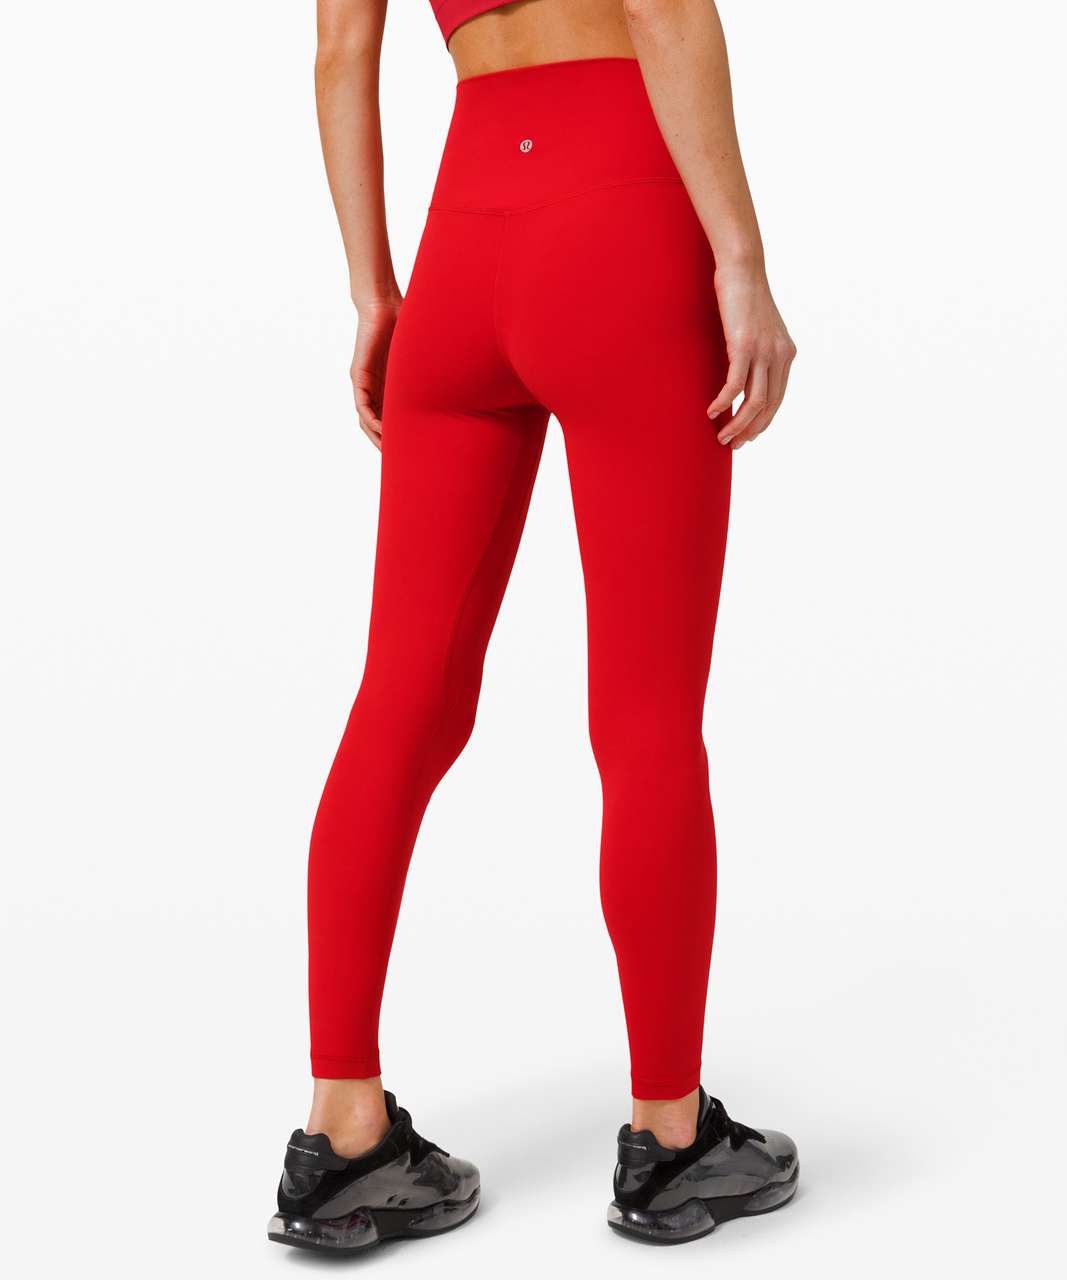 red lululemon leggings